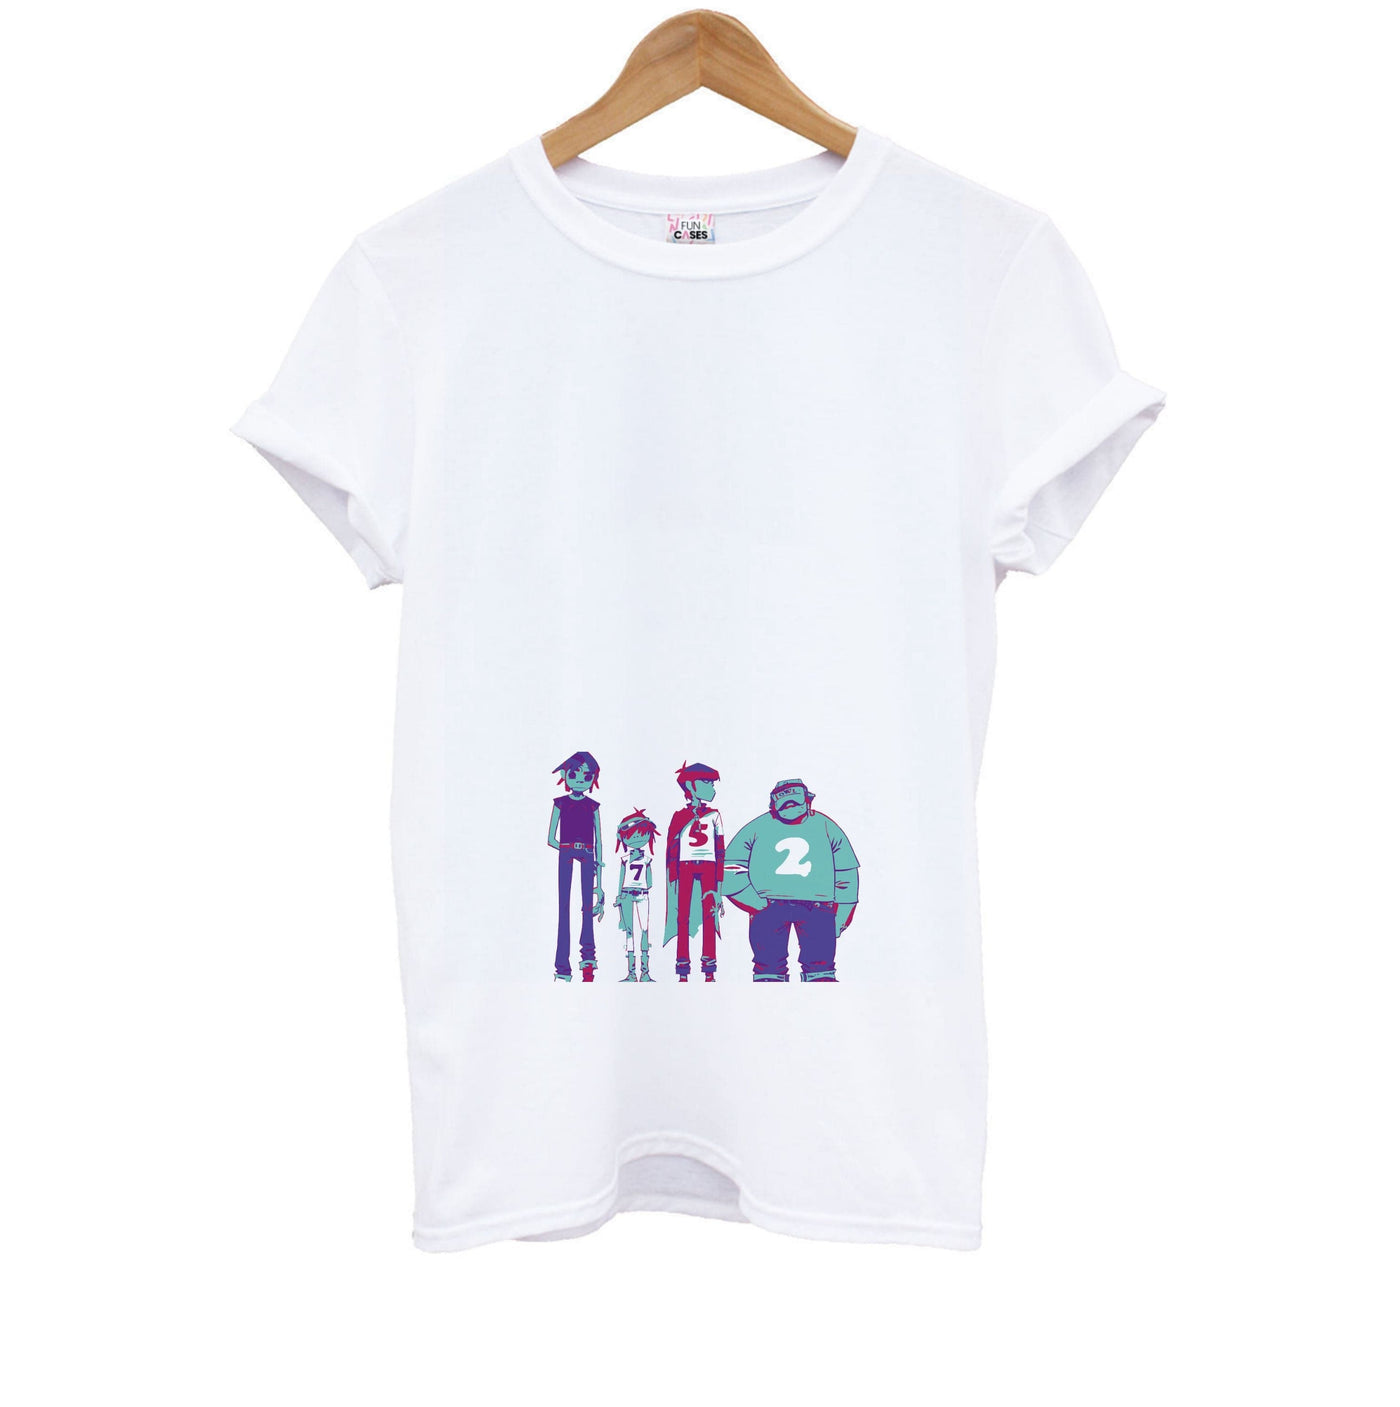 2,5,7 - Gorillaz Kids T-Shirt